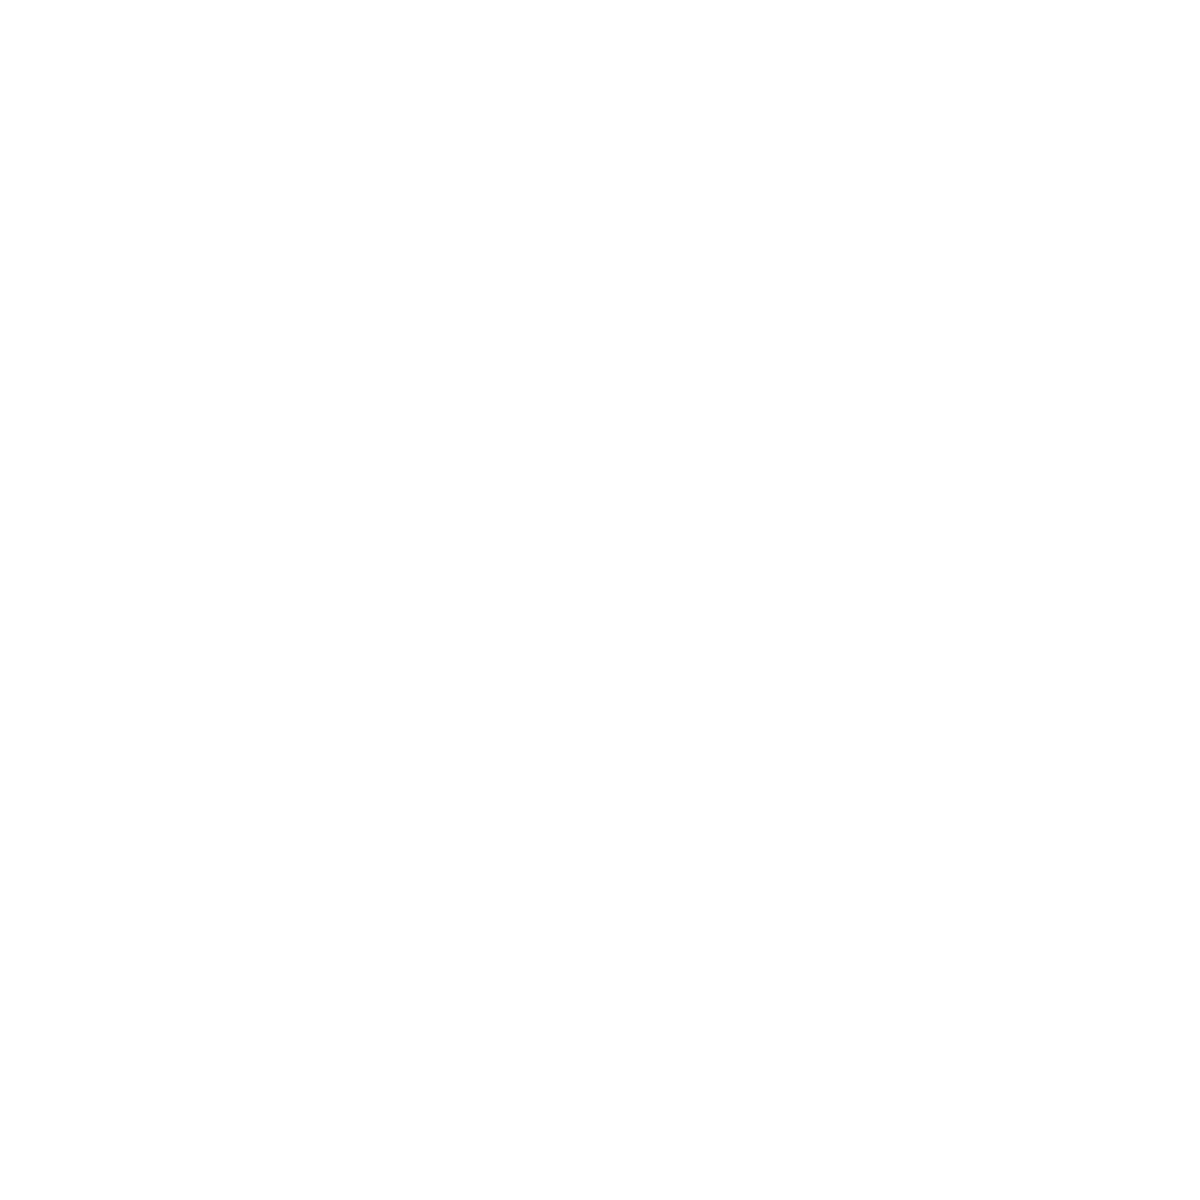 THE RANGE